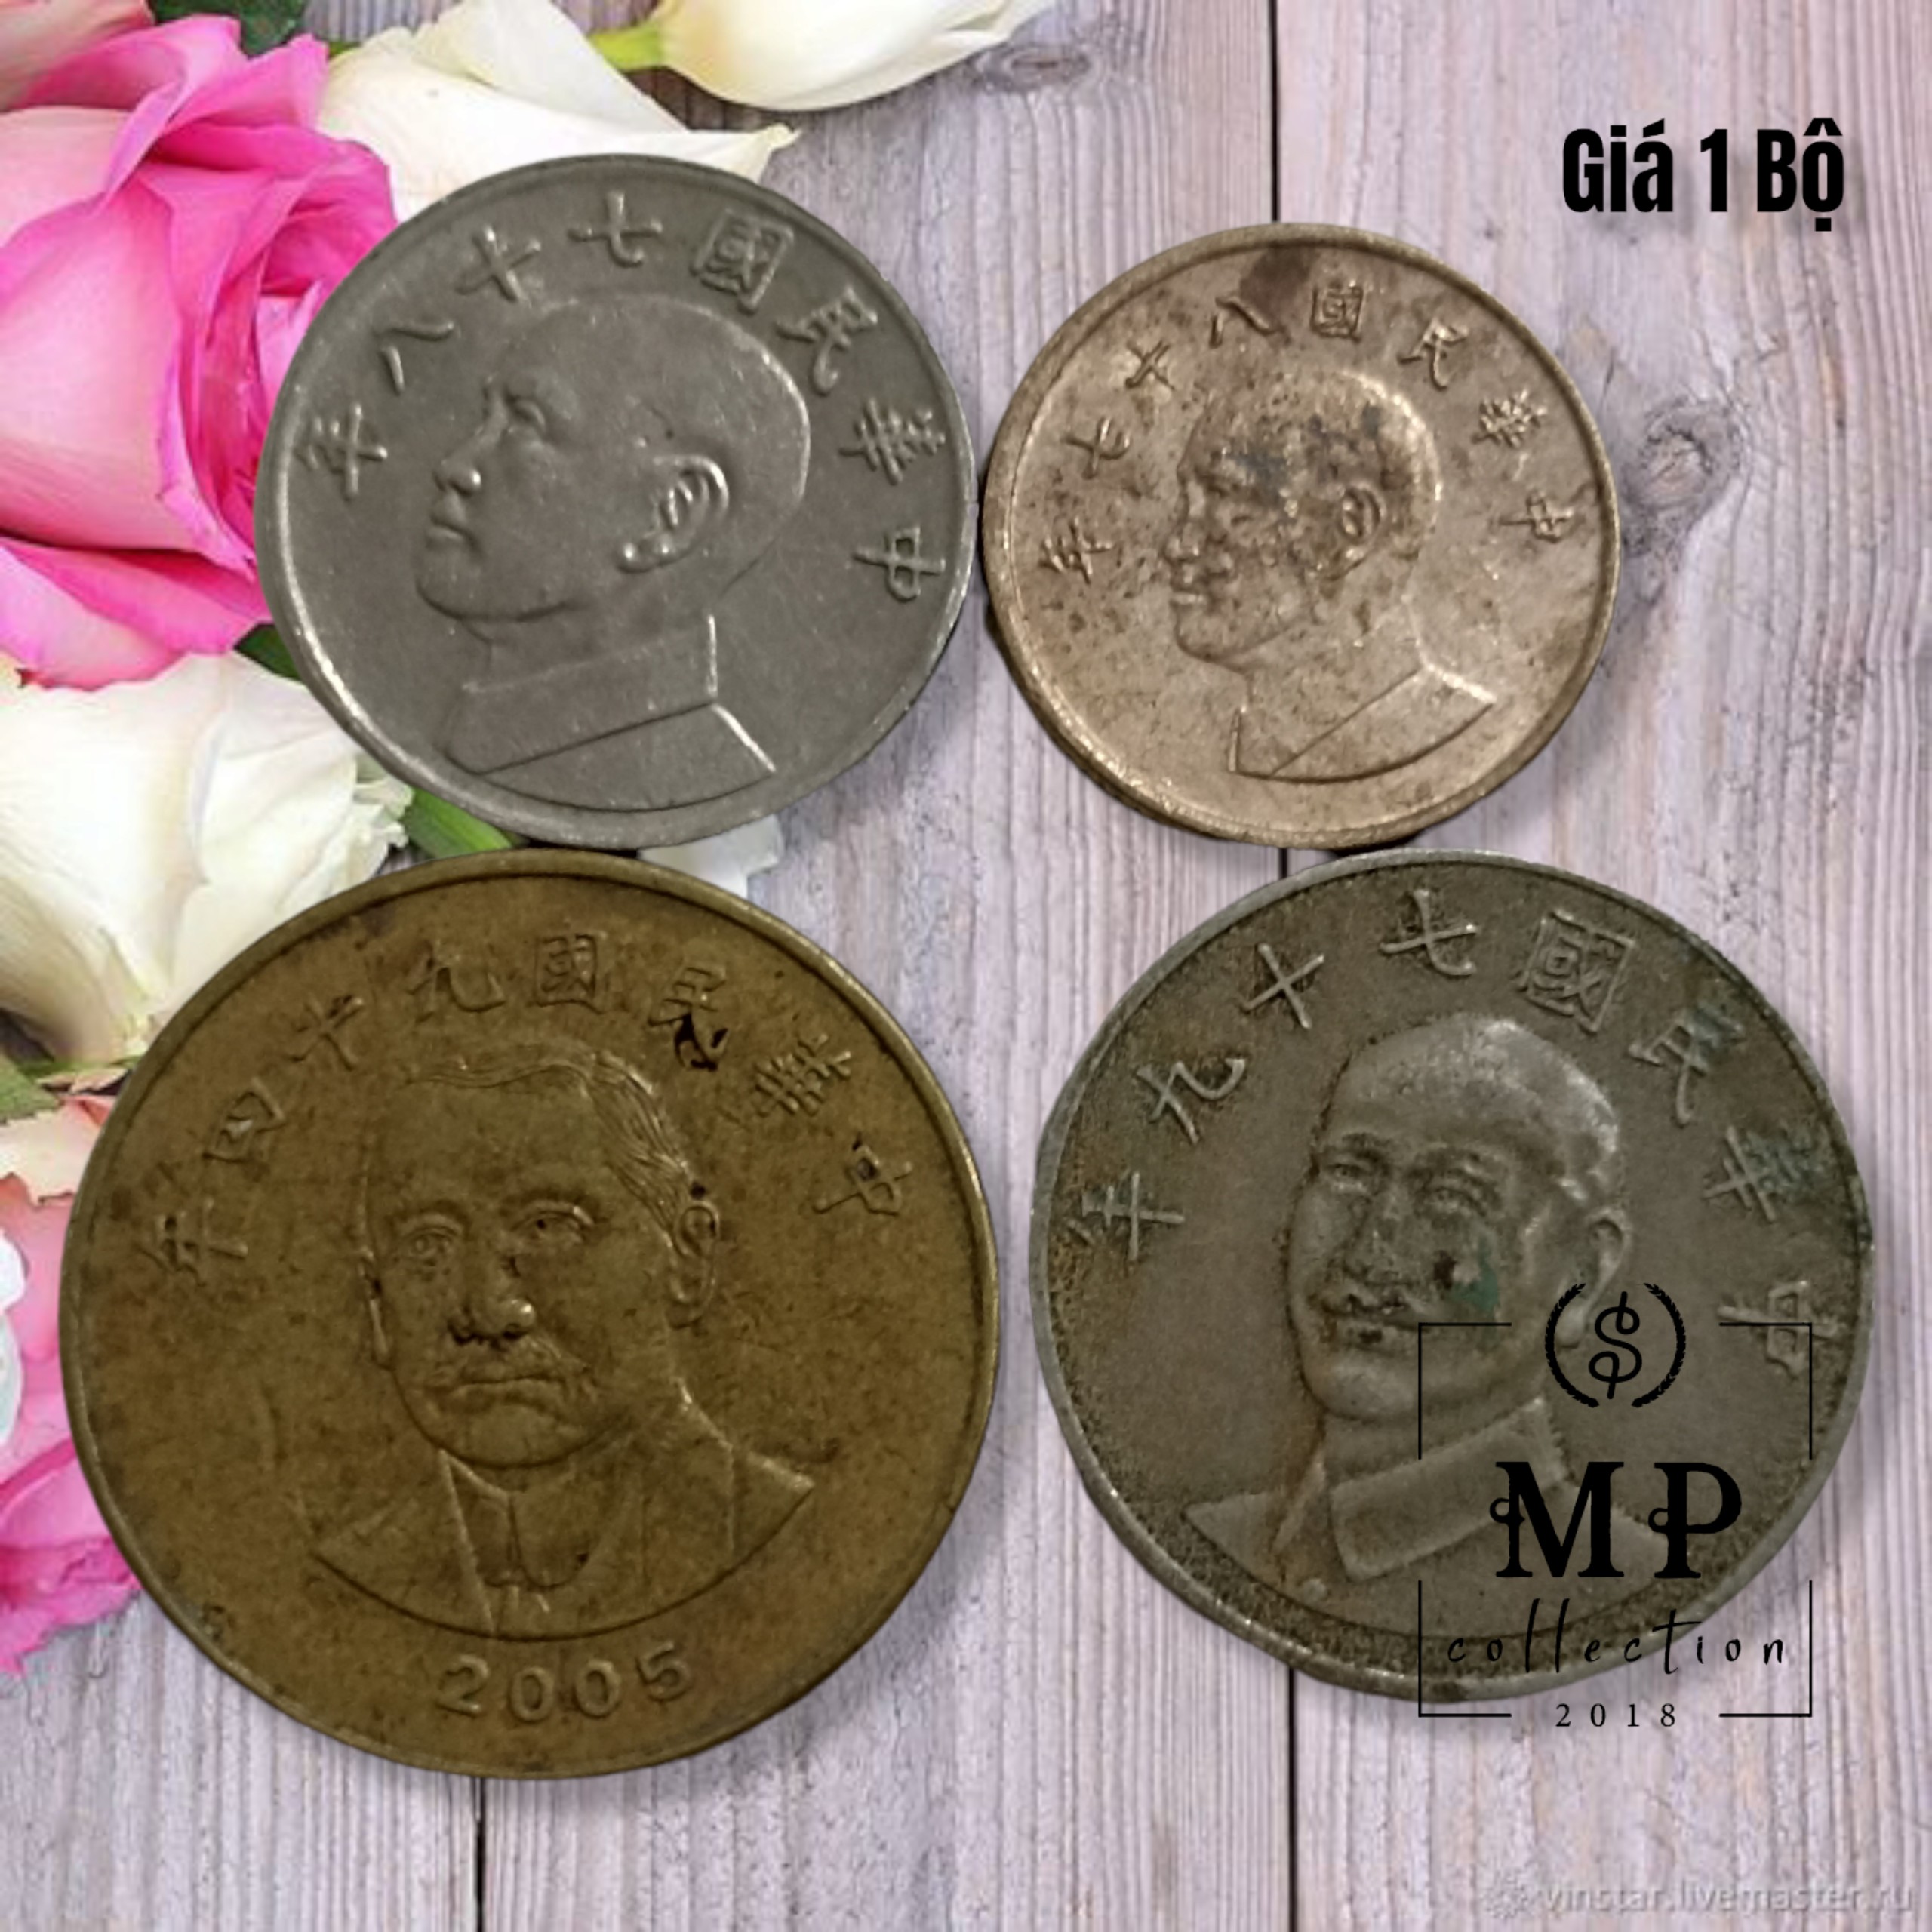 Bộ 4 xu Đài Loan Sưu tầm mẹnh giá 1 5 10 50 Yuan các năm khác nhau.